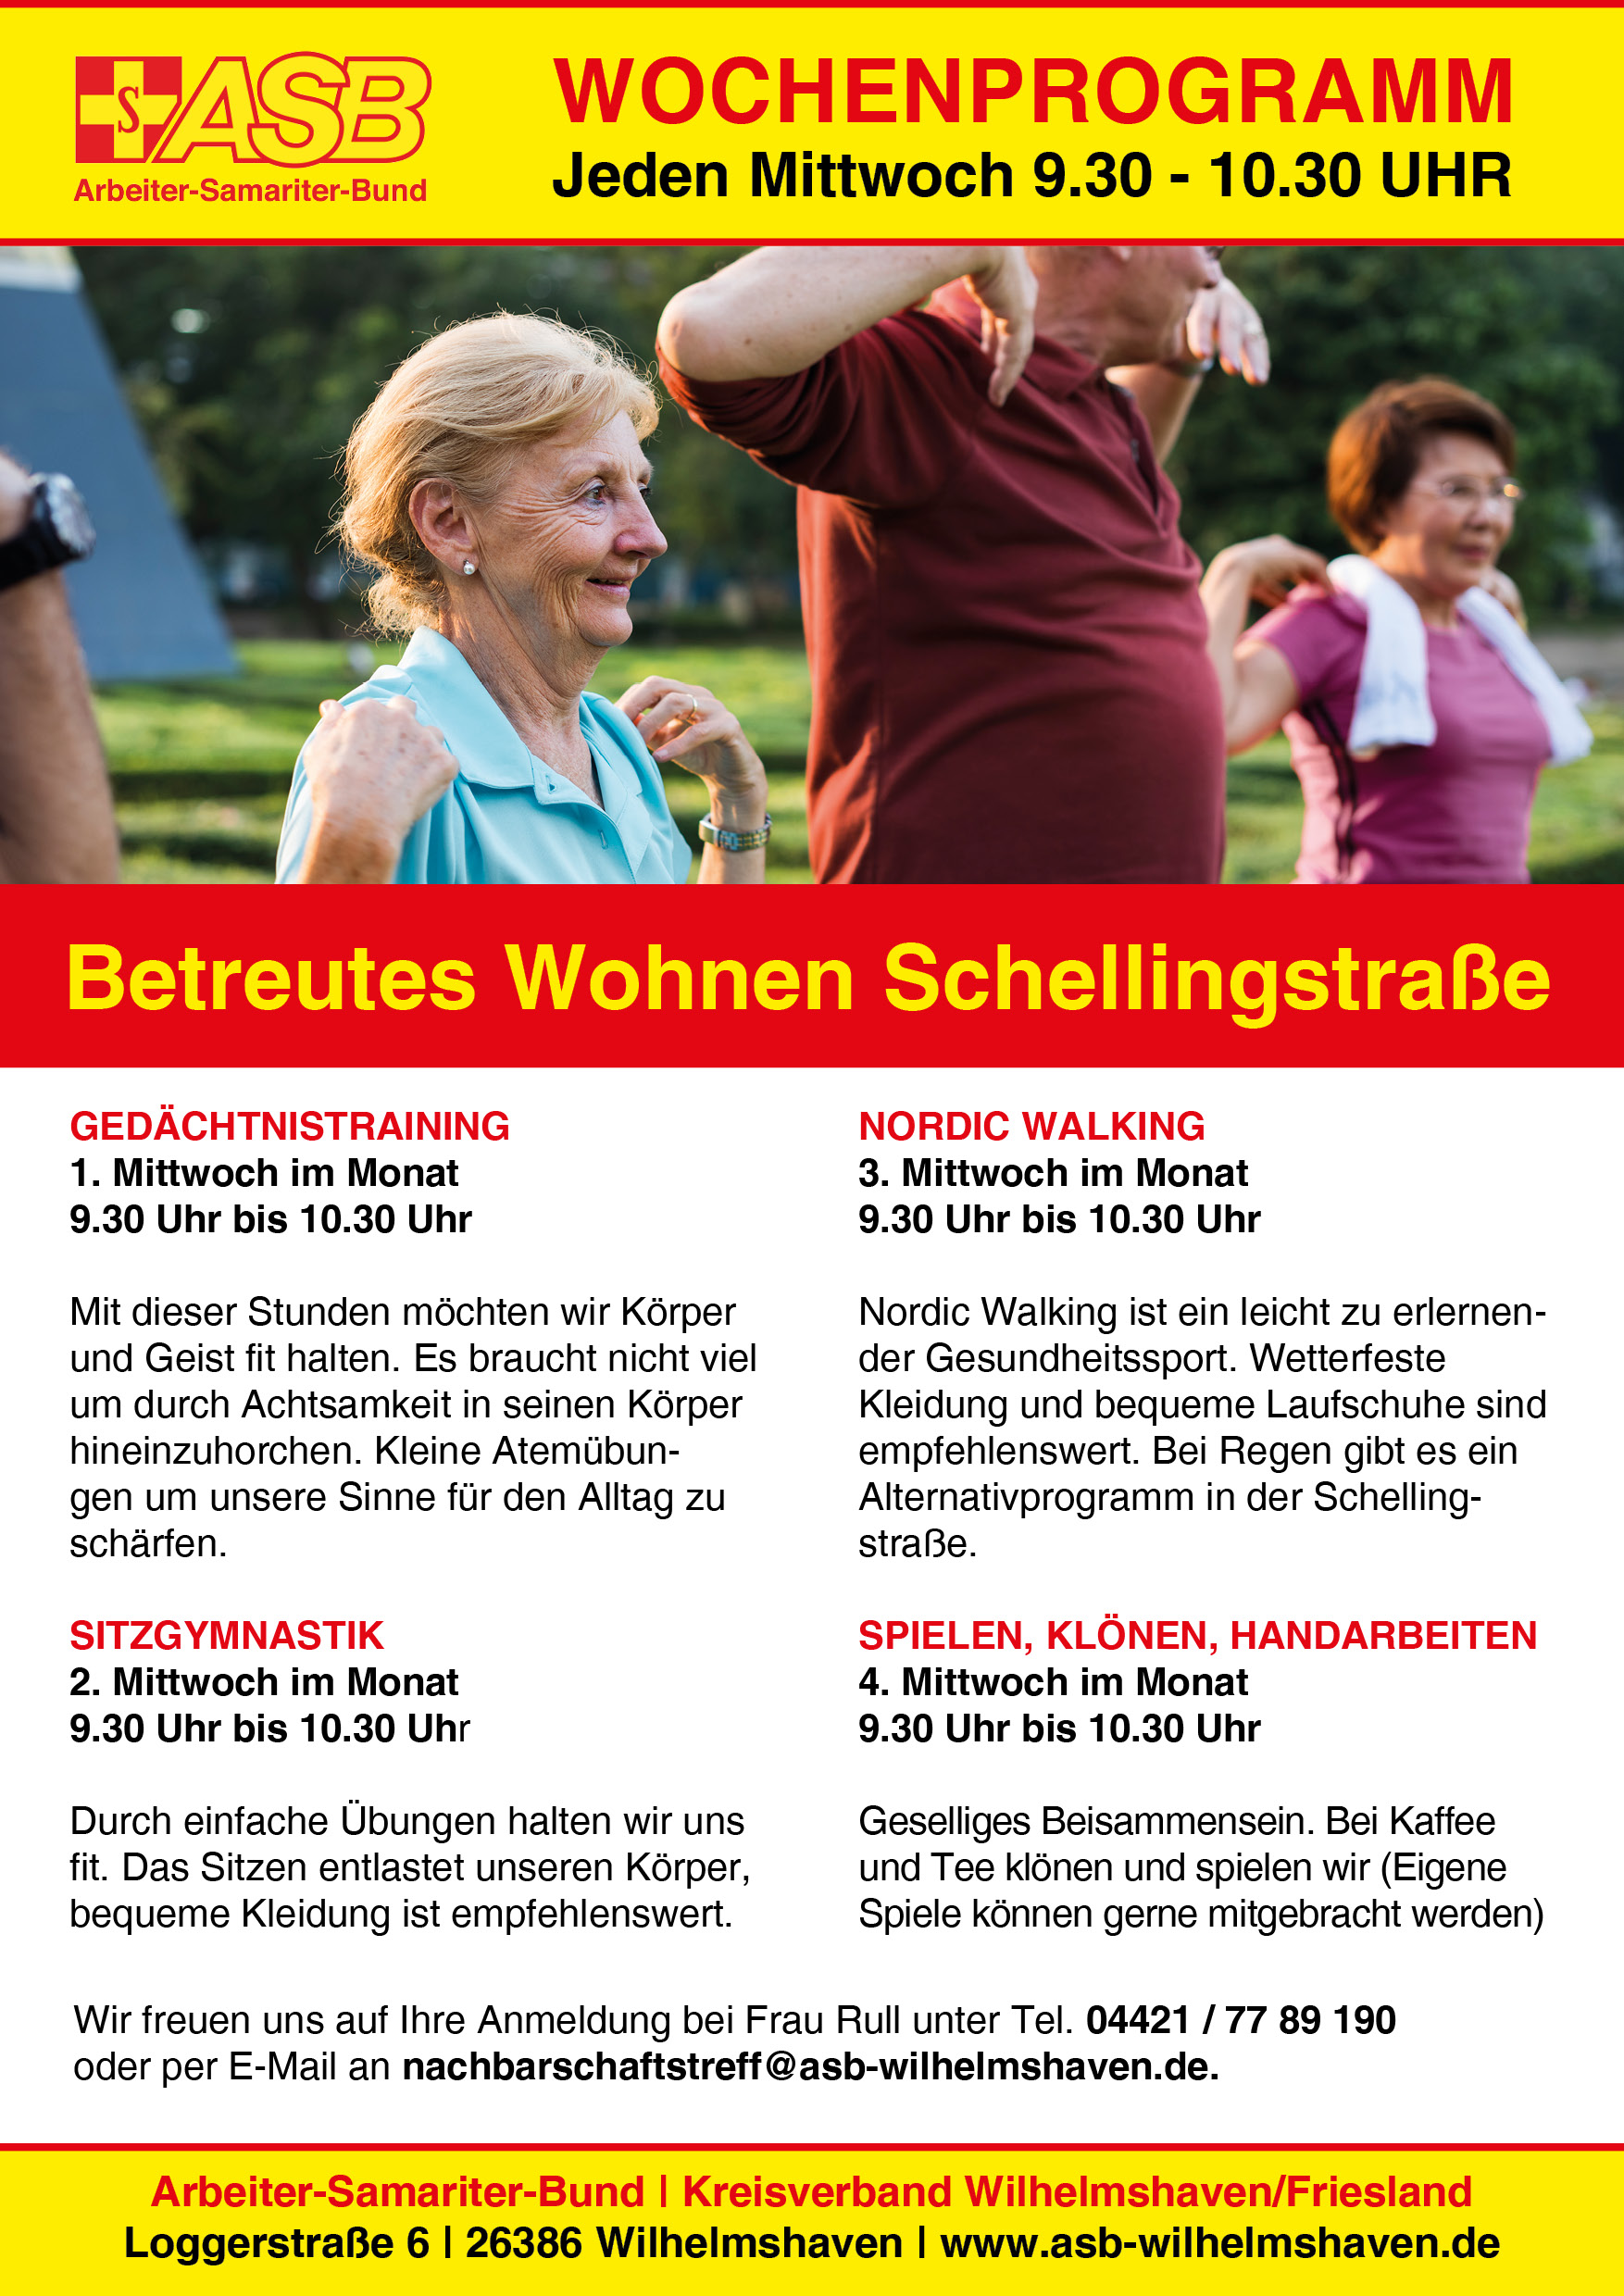 Wochenprogramm Betreutes Wohnen Schellingstraße